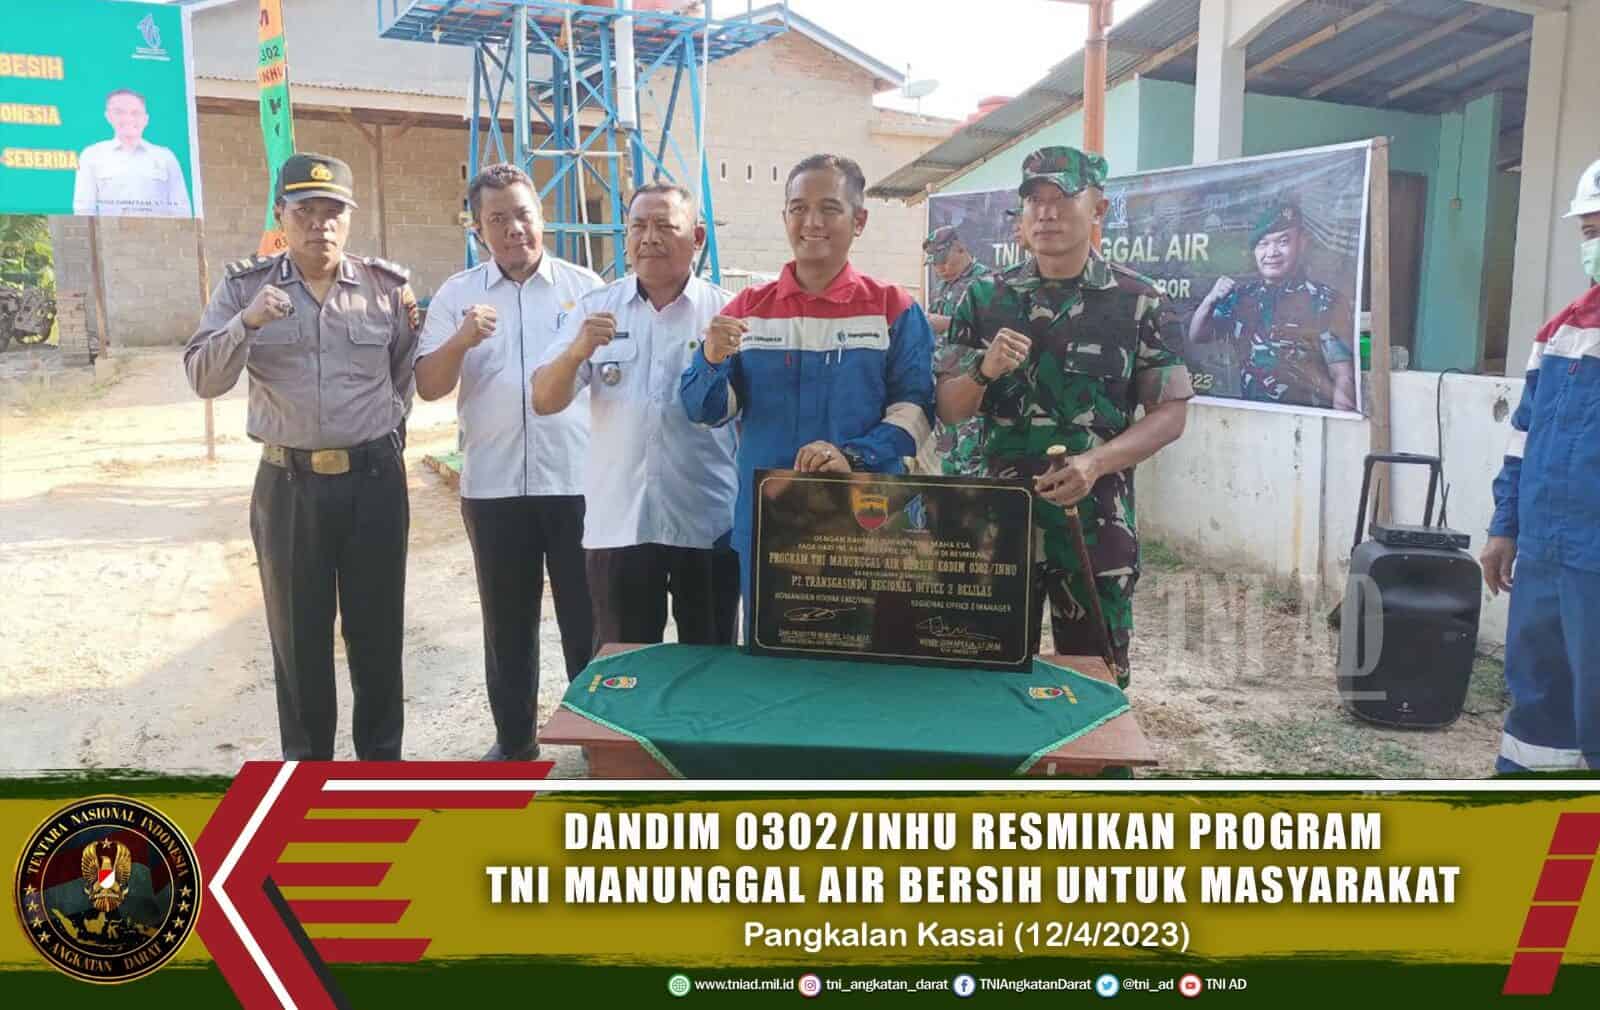 Dandim 0302/Inhu Resmikan Program TNI Manunggal Air Bersih Untuk Masyarakat